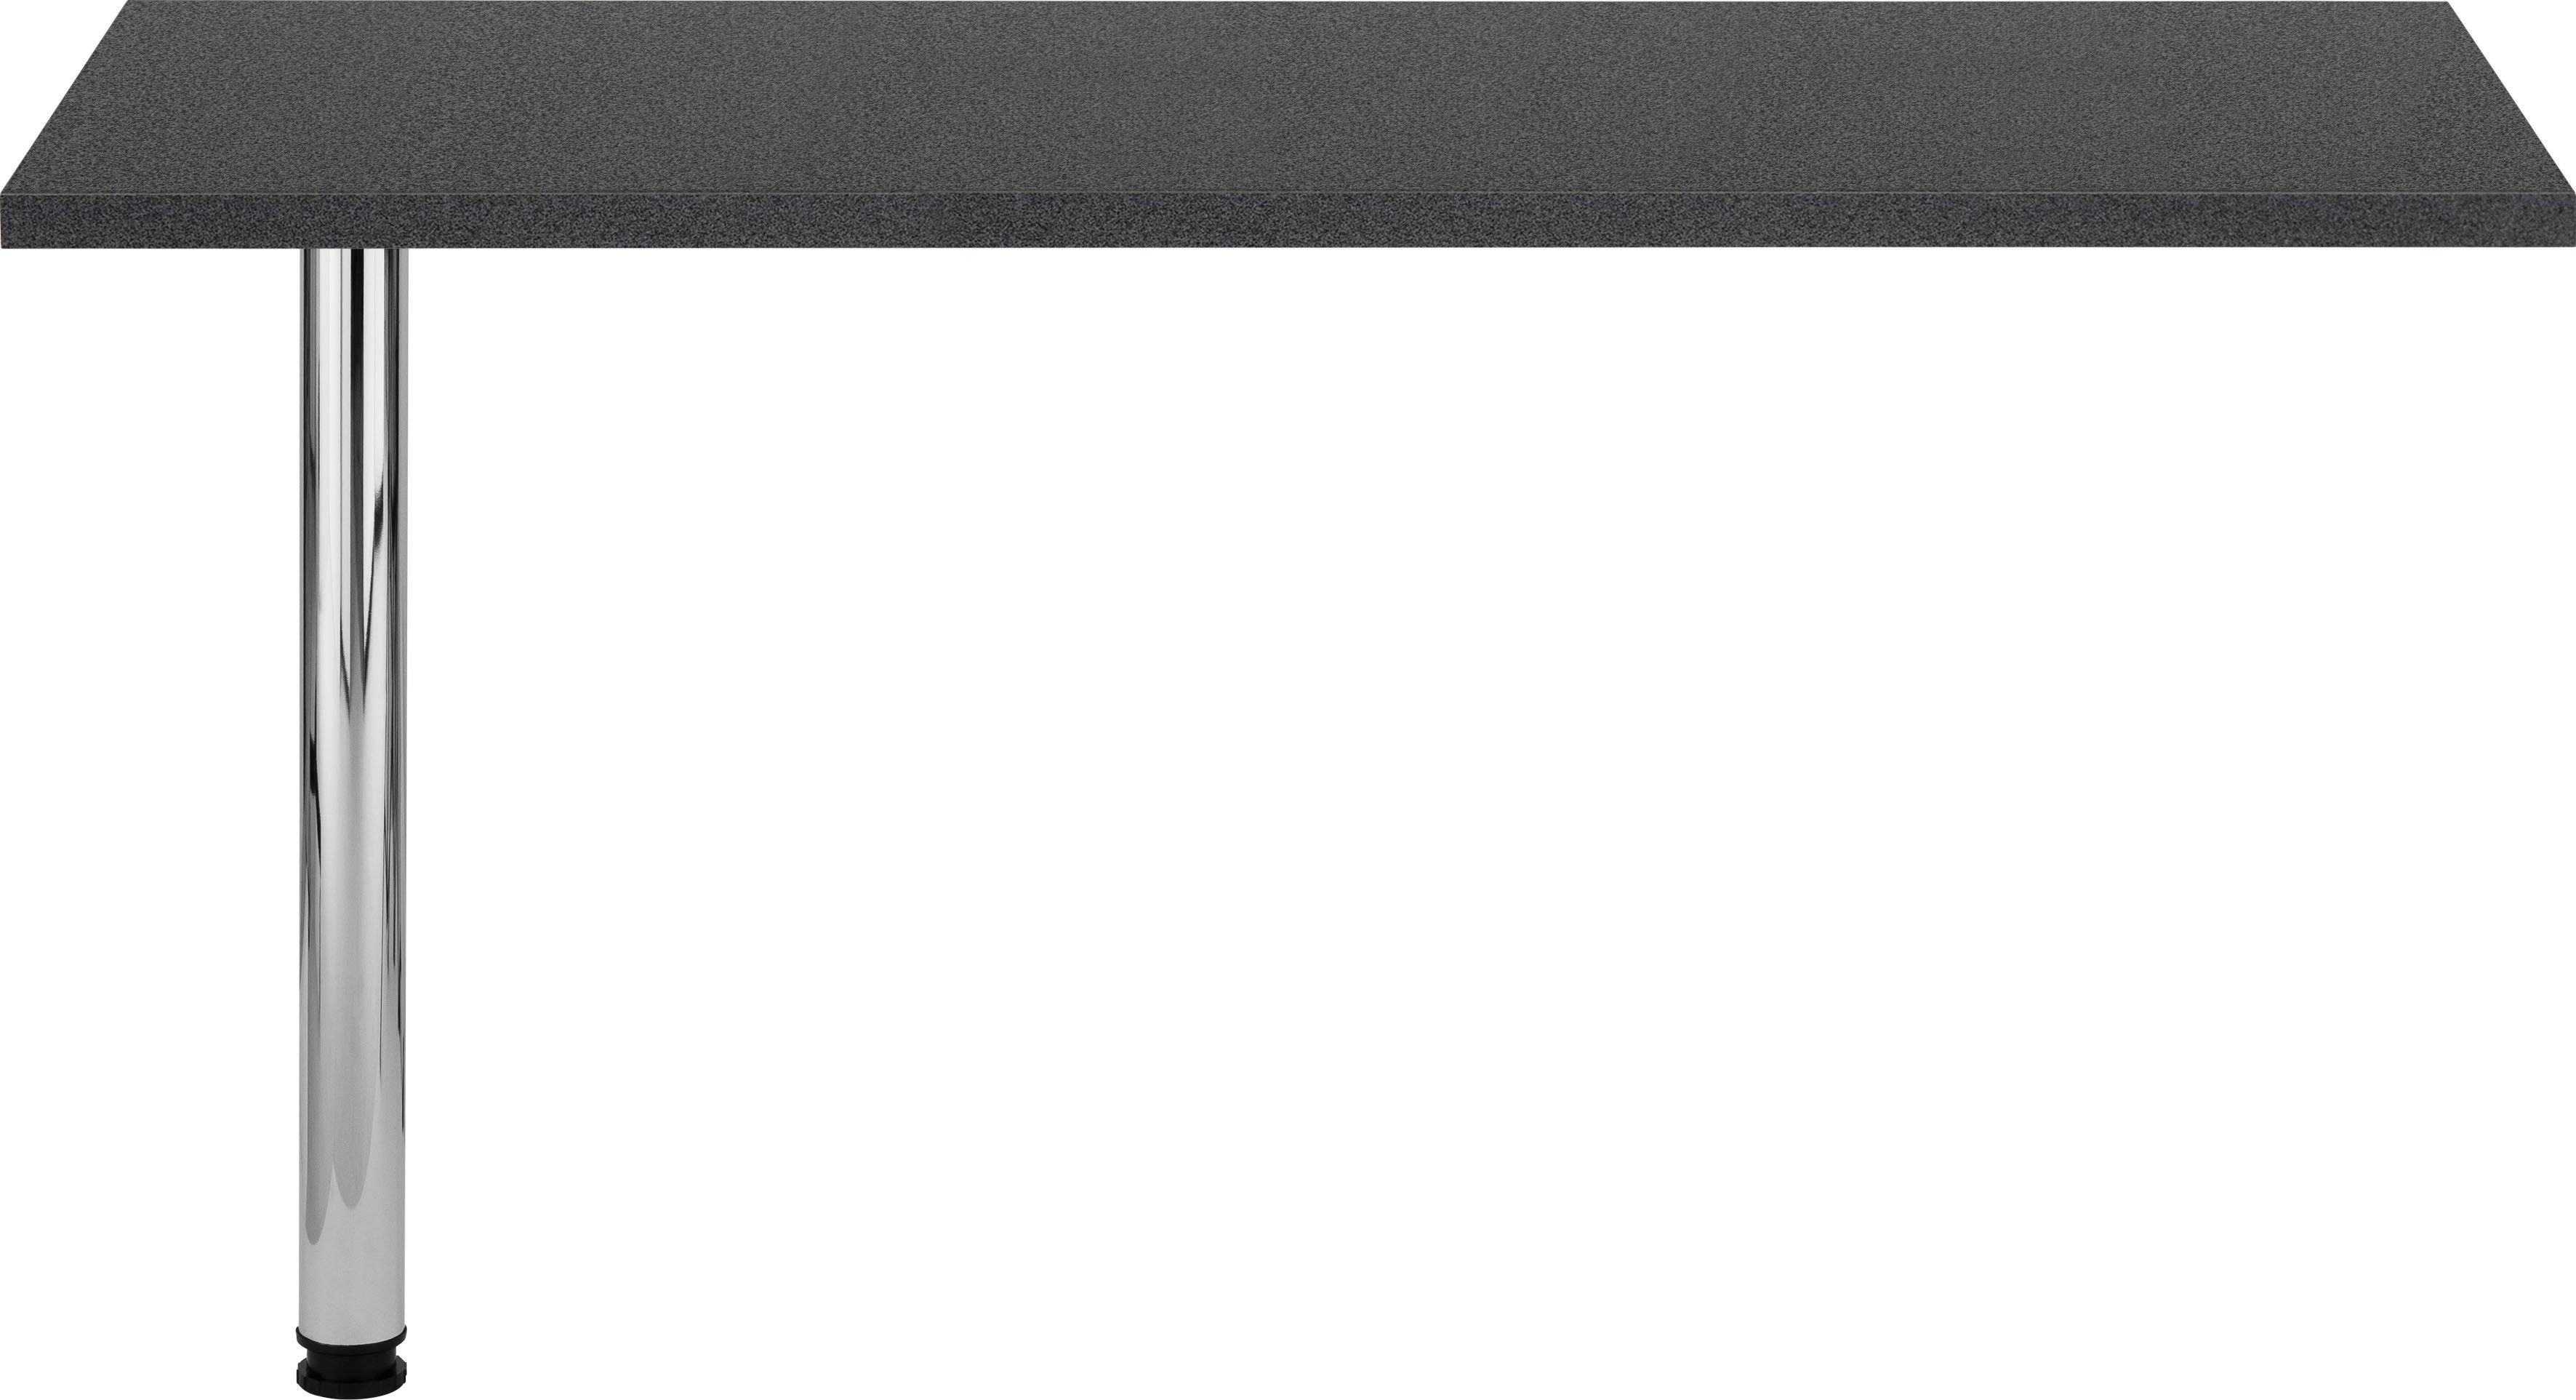 HELD MÖBEL Tresentisch Virginia, 138 cm breit, ideal für kleine Küchen anthrazit